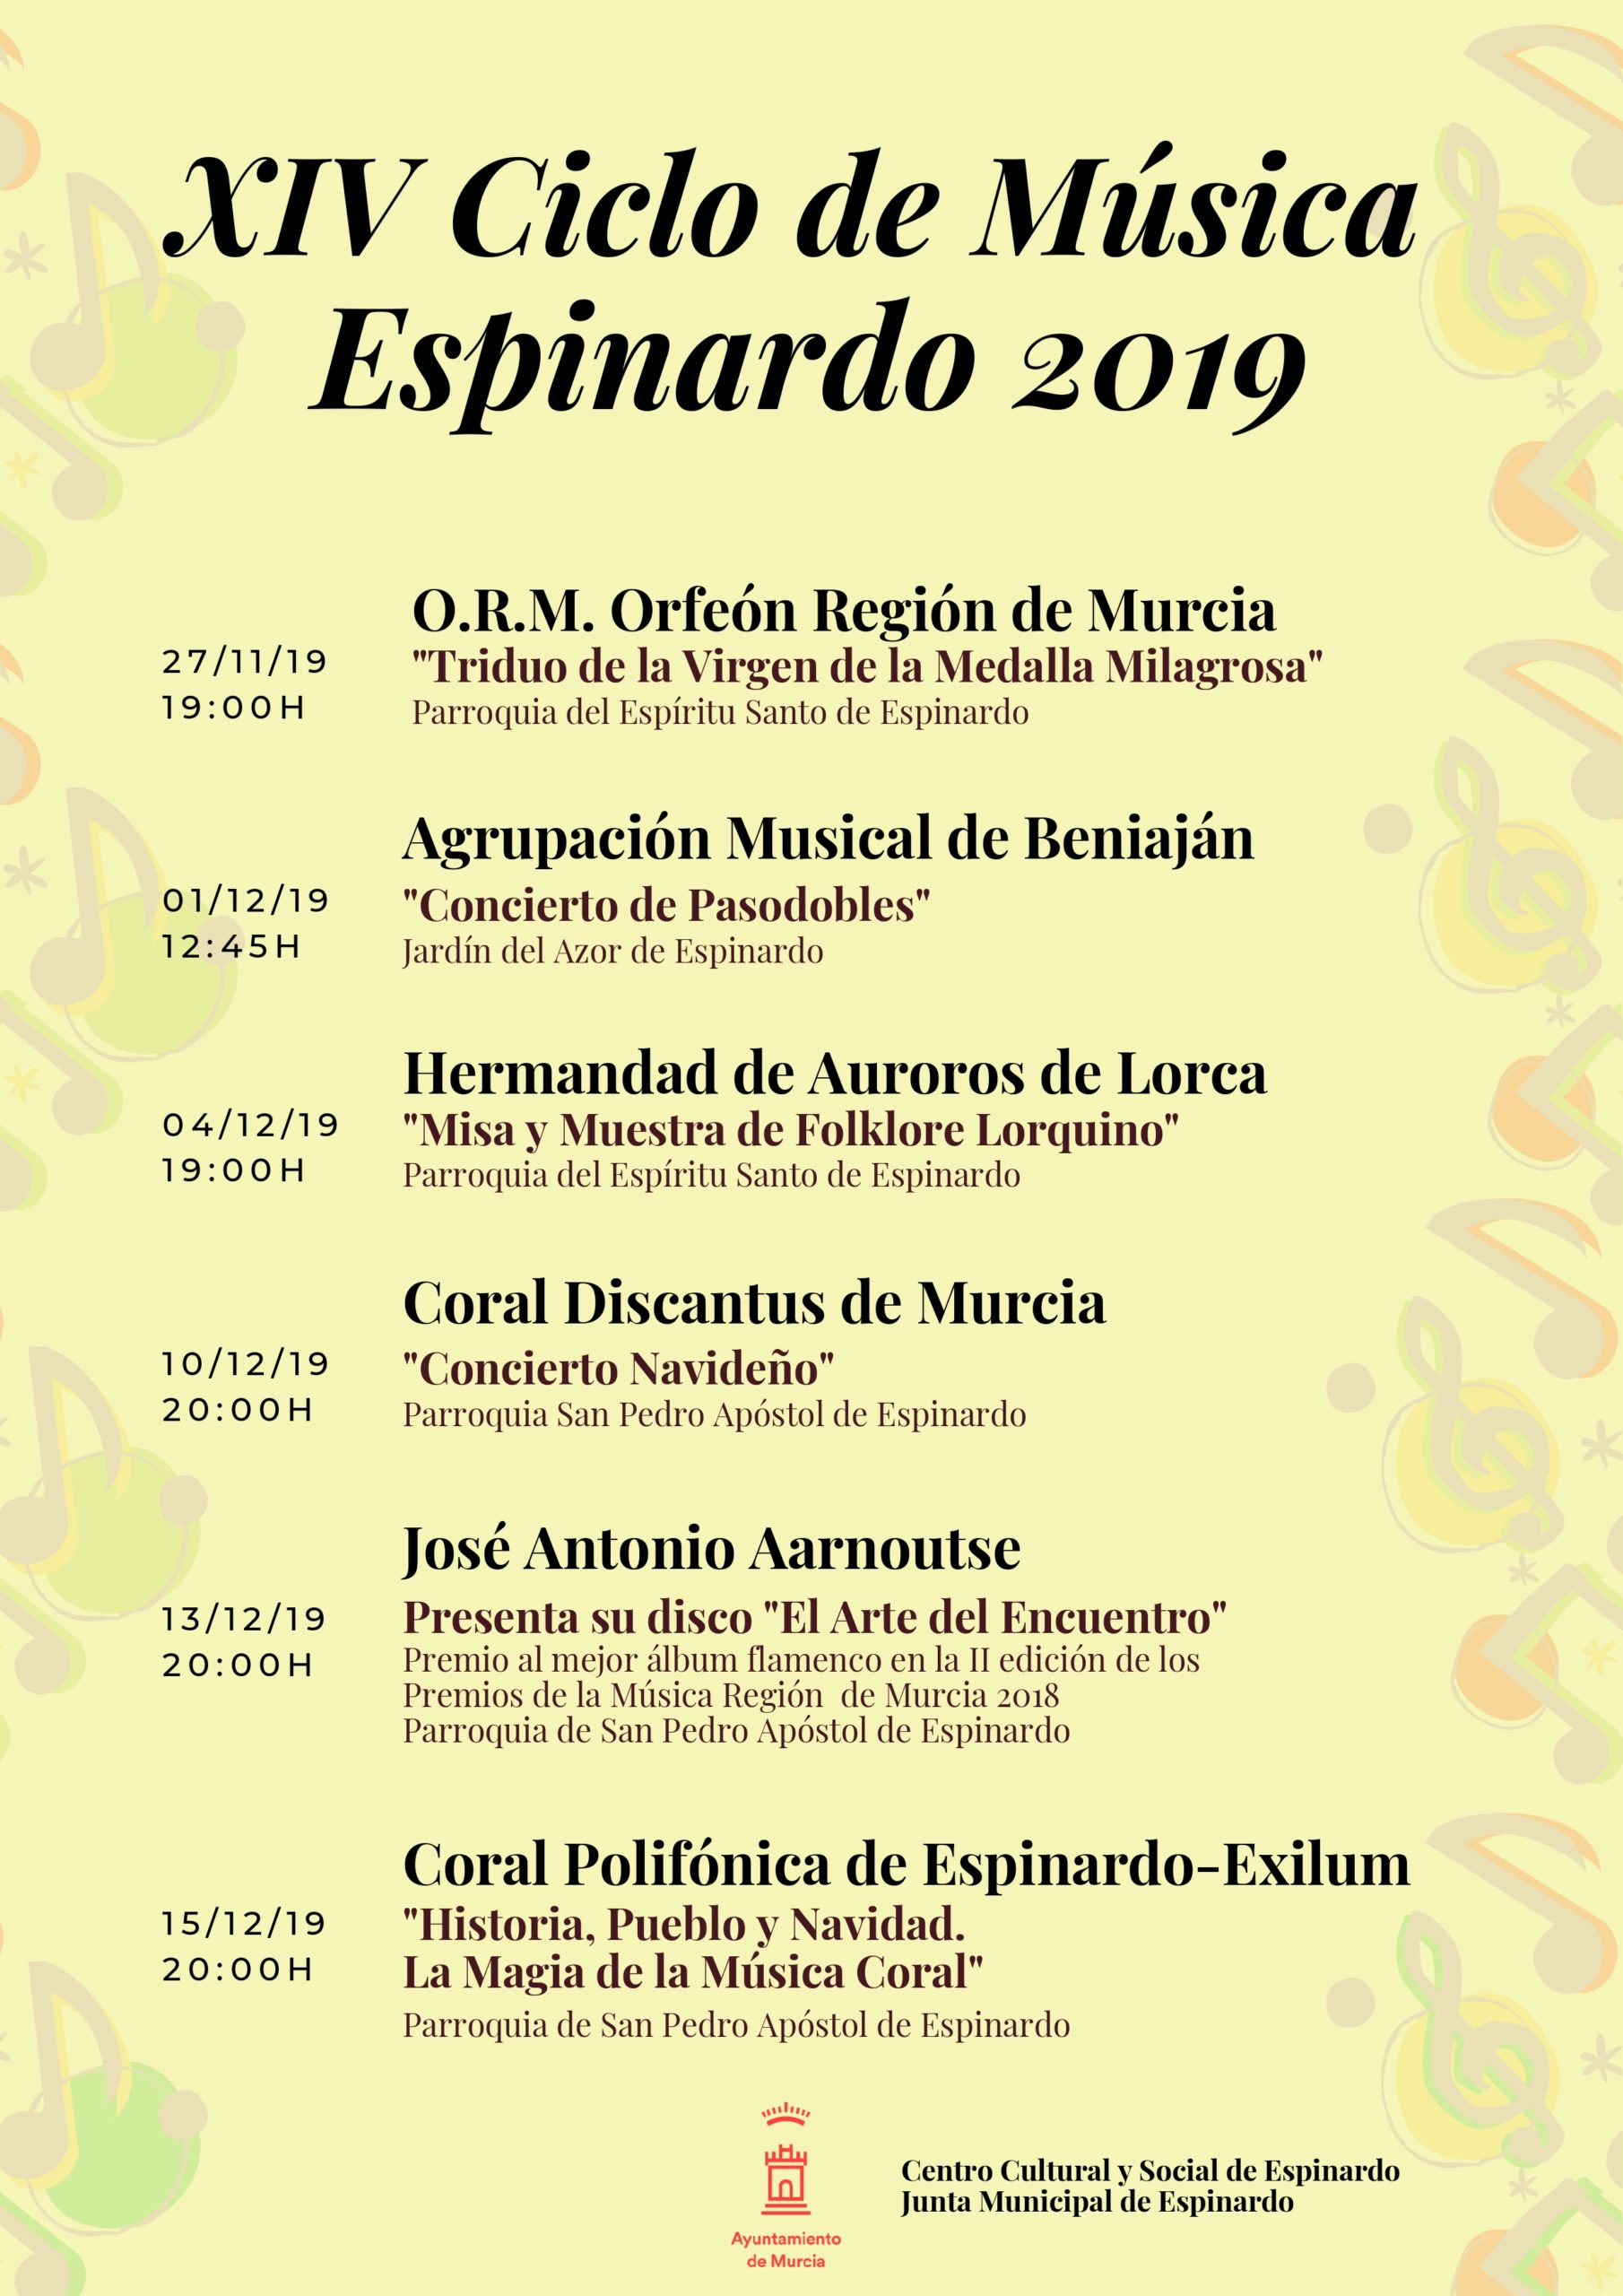 Ciclo de Música Espinardo 2019 